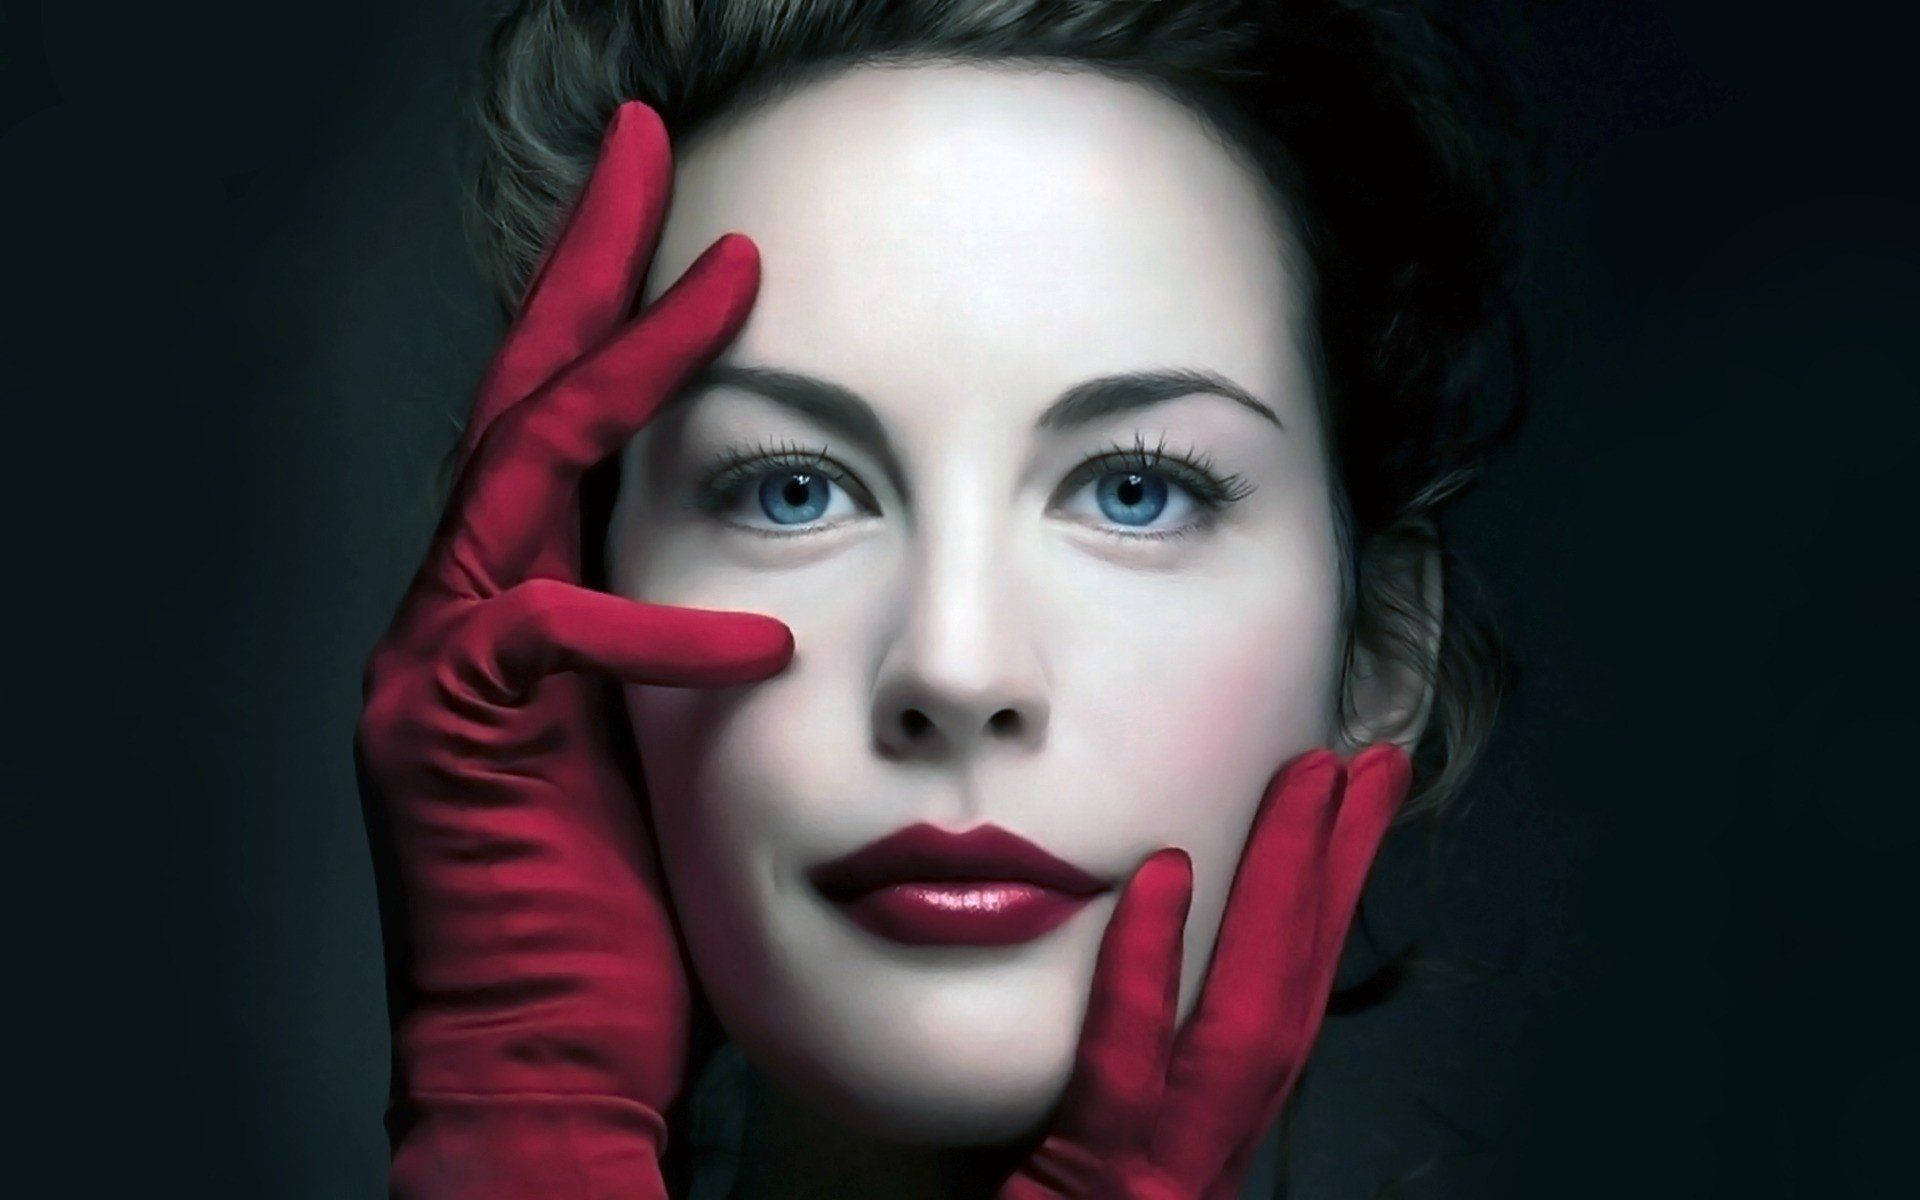 Liv Tyler Hand&Face Photoshoot Wallpaper